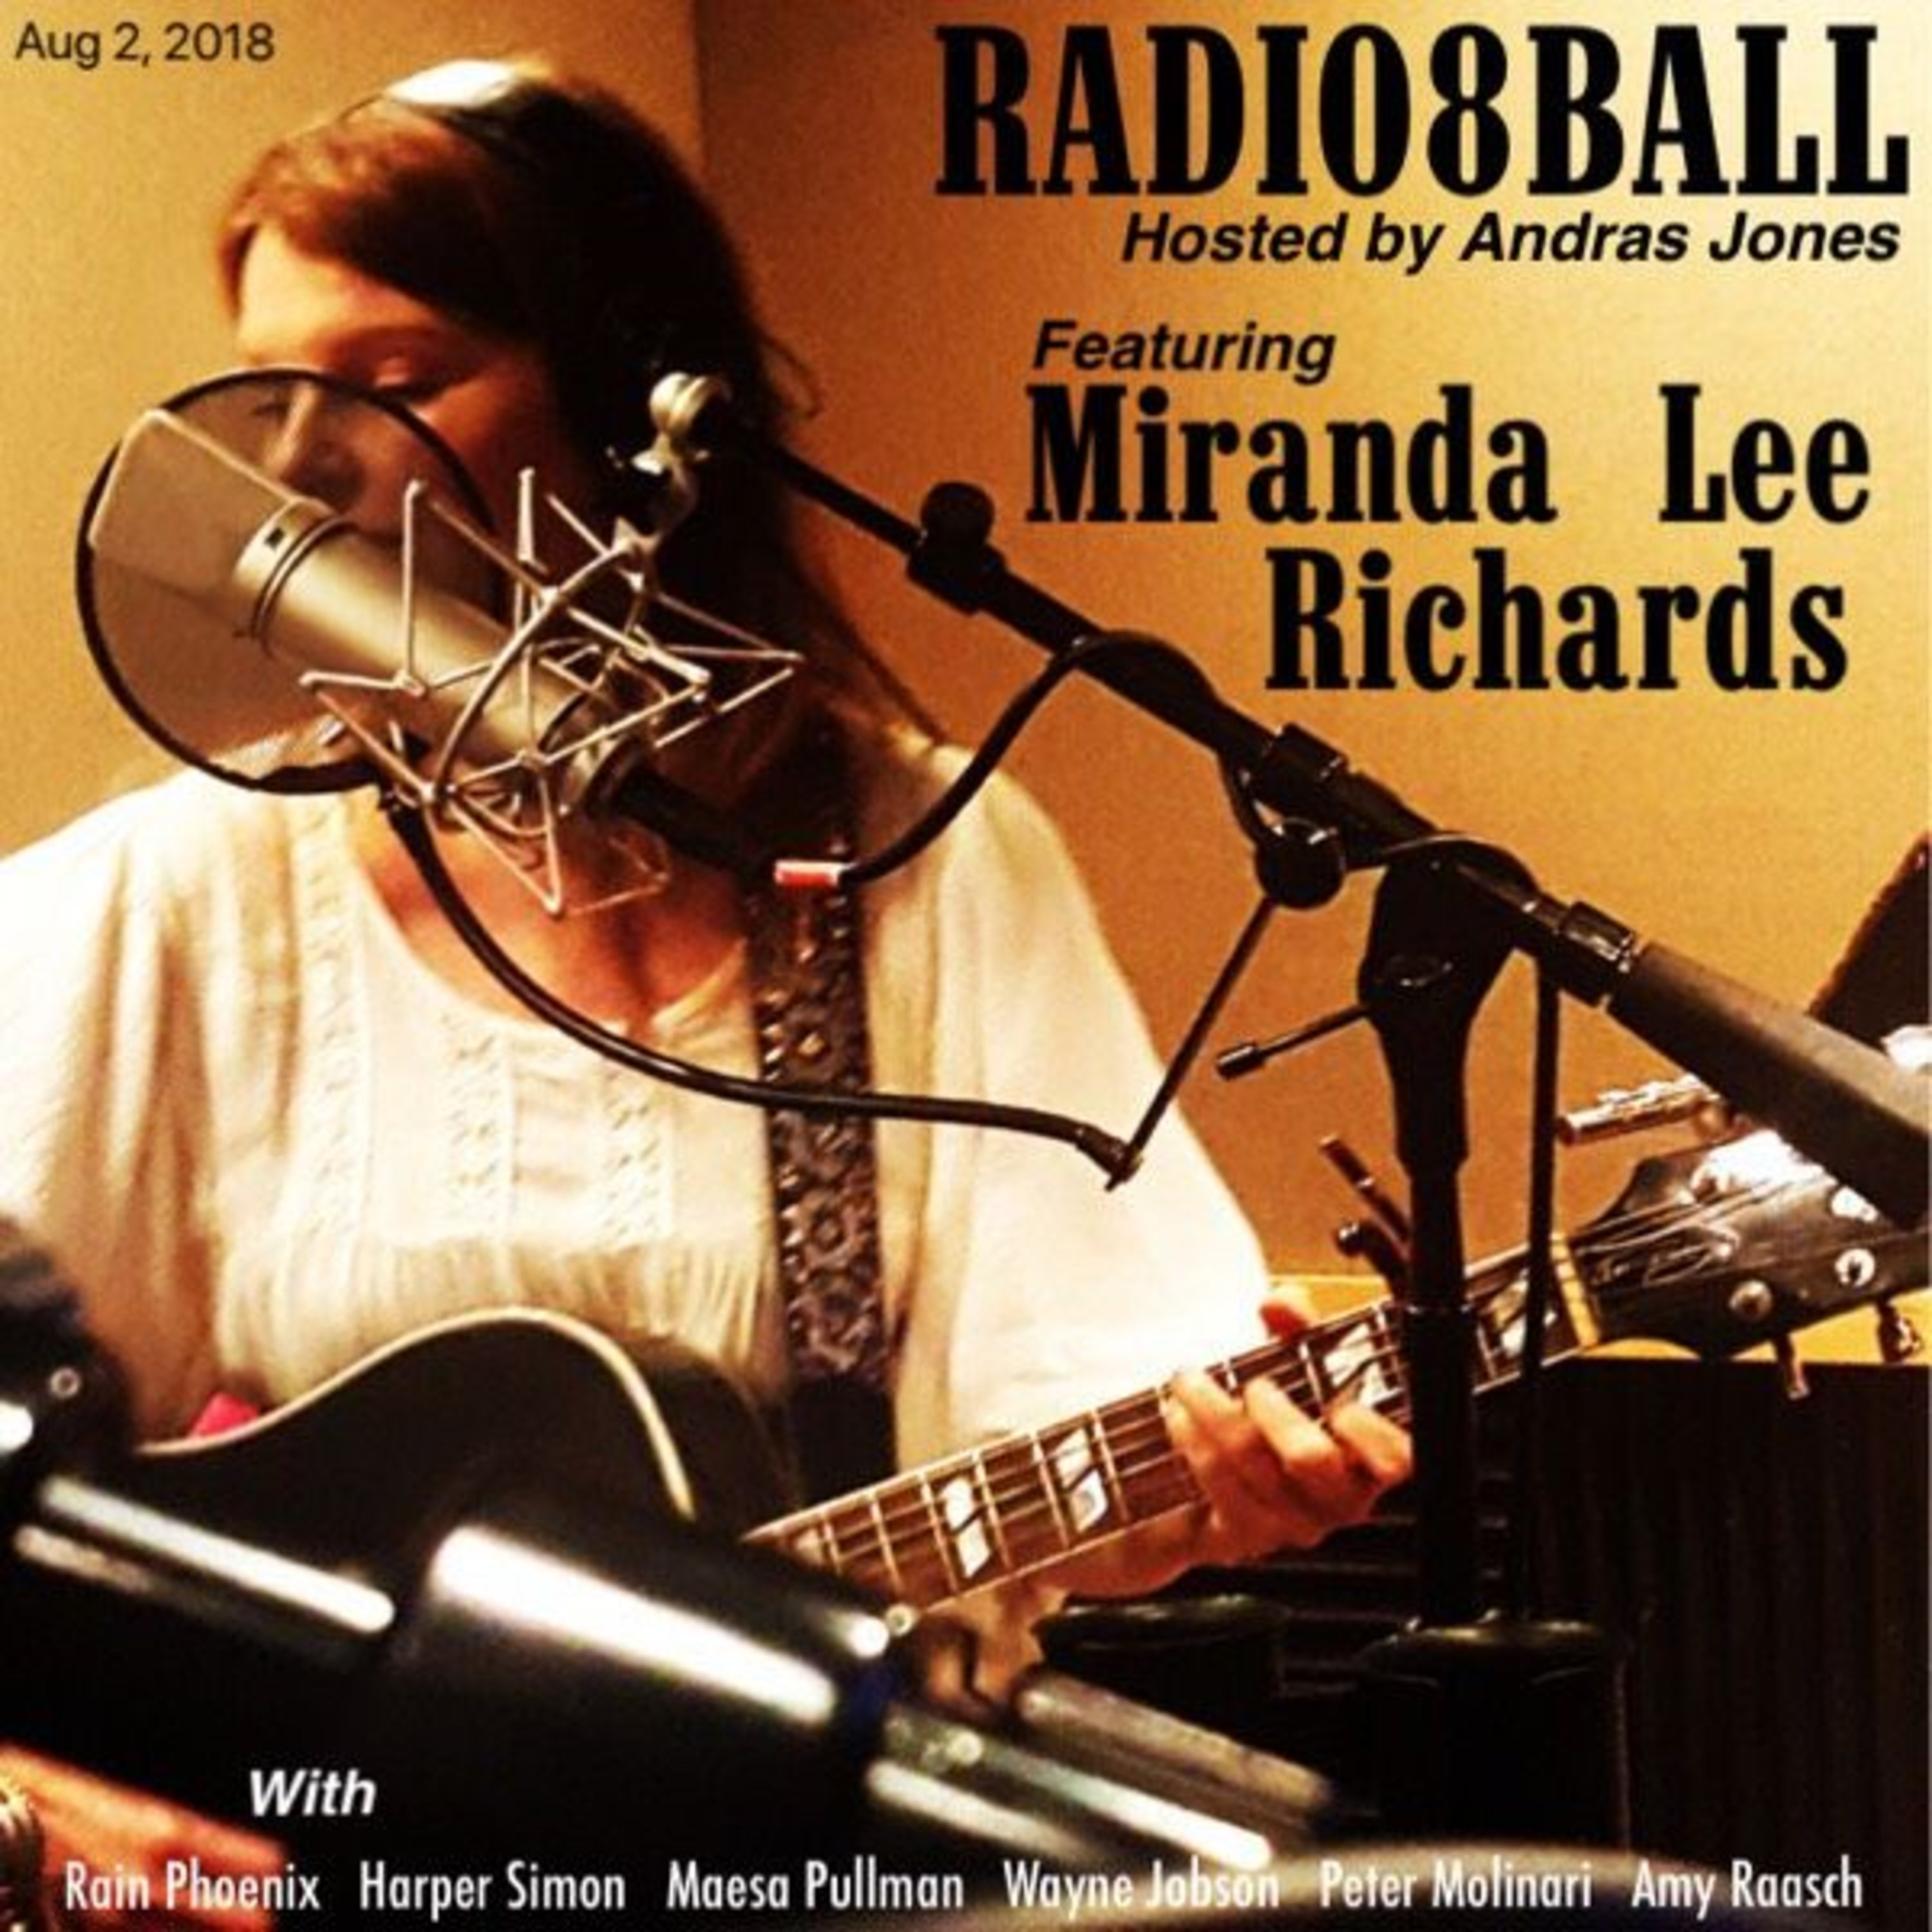 336: Miranda Lee Richards & Miranda Lee Richards (August 2, 2018 - Pod 8)